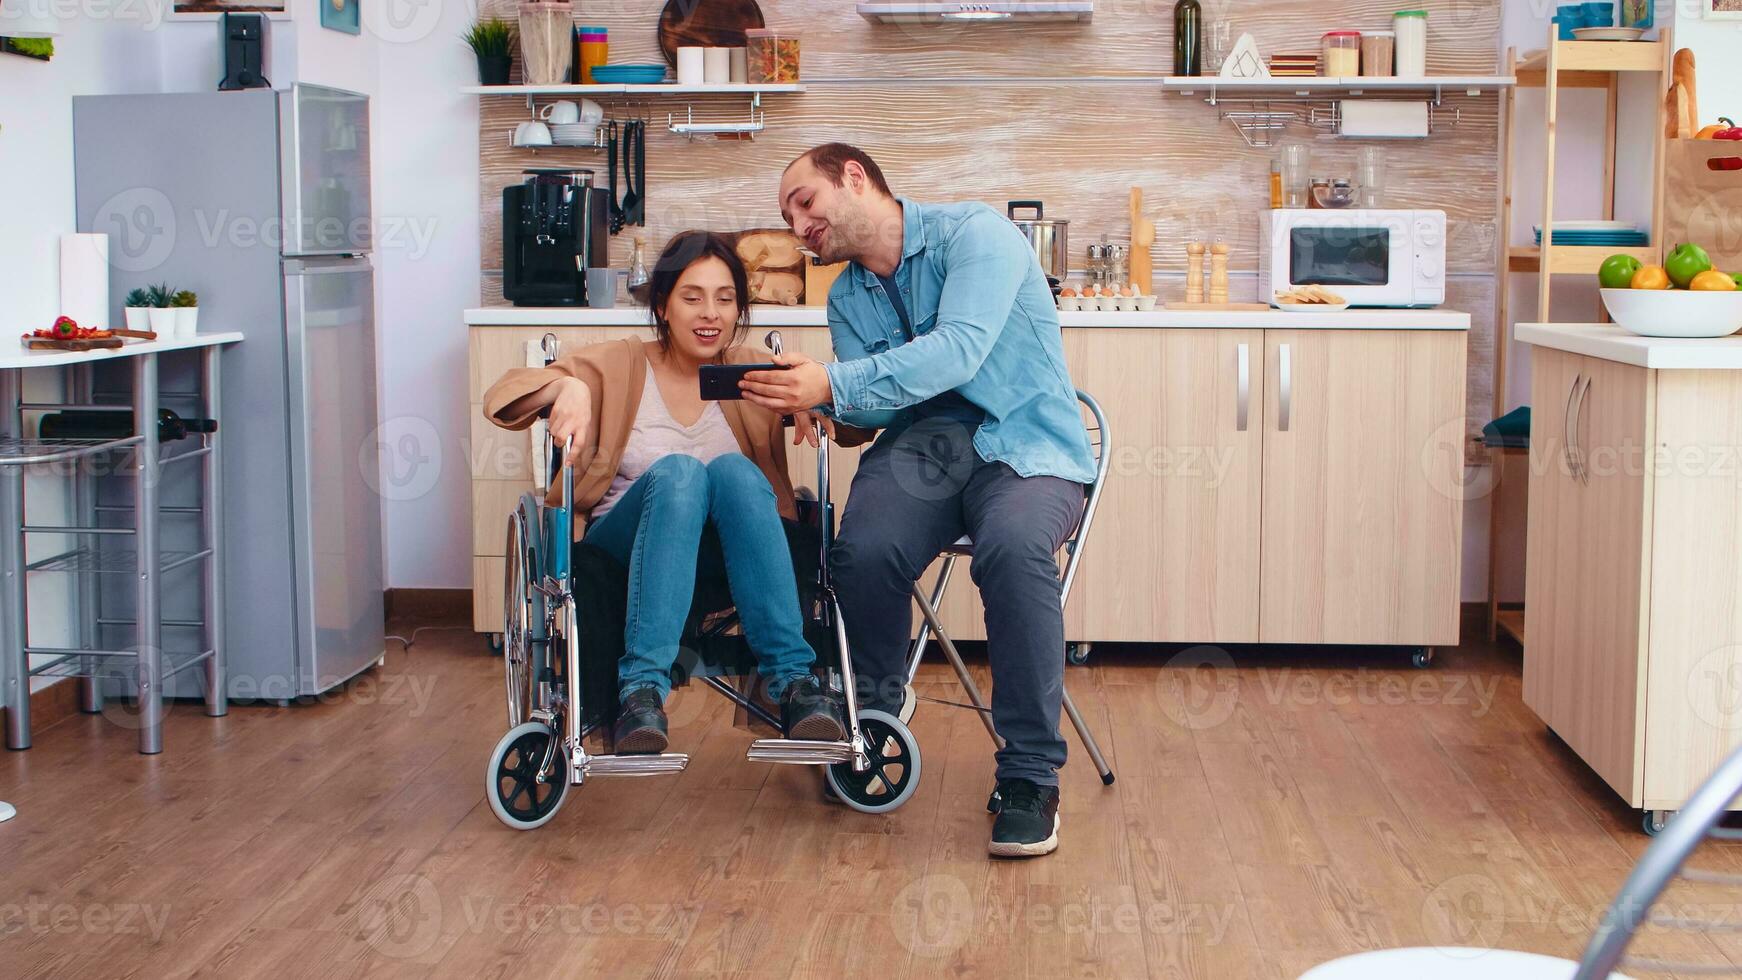 vrolijk gehandicapt vrouw in rolstoel nemen een selfie met man in keuken. hoopvol man met gehandicapten gehandicapt onbekwaamheid ongeldig verlamming handicap persoon De volgende naar hem, helpen haar naar re-integreren foto